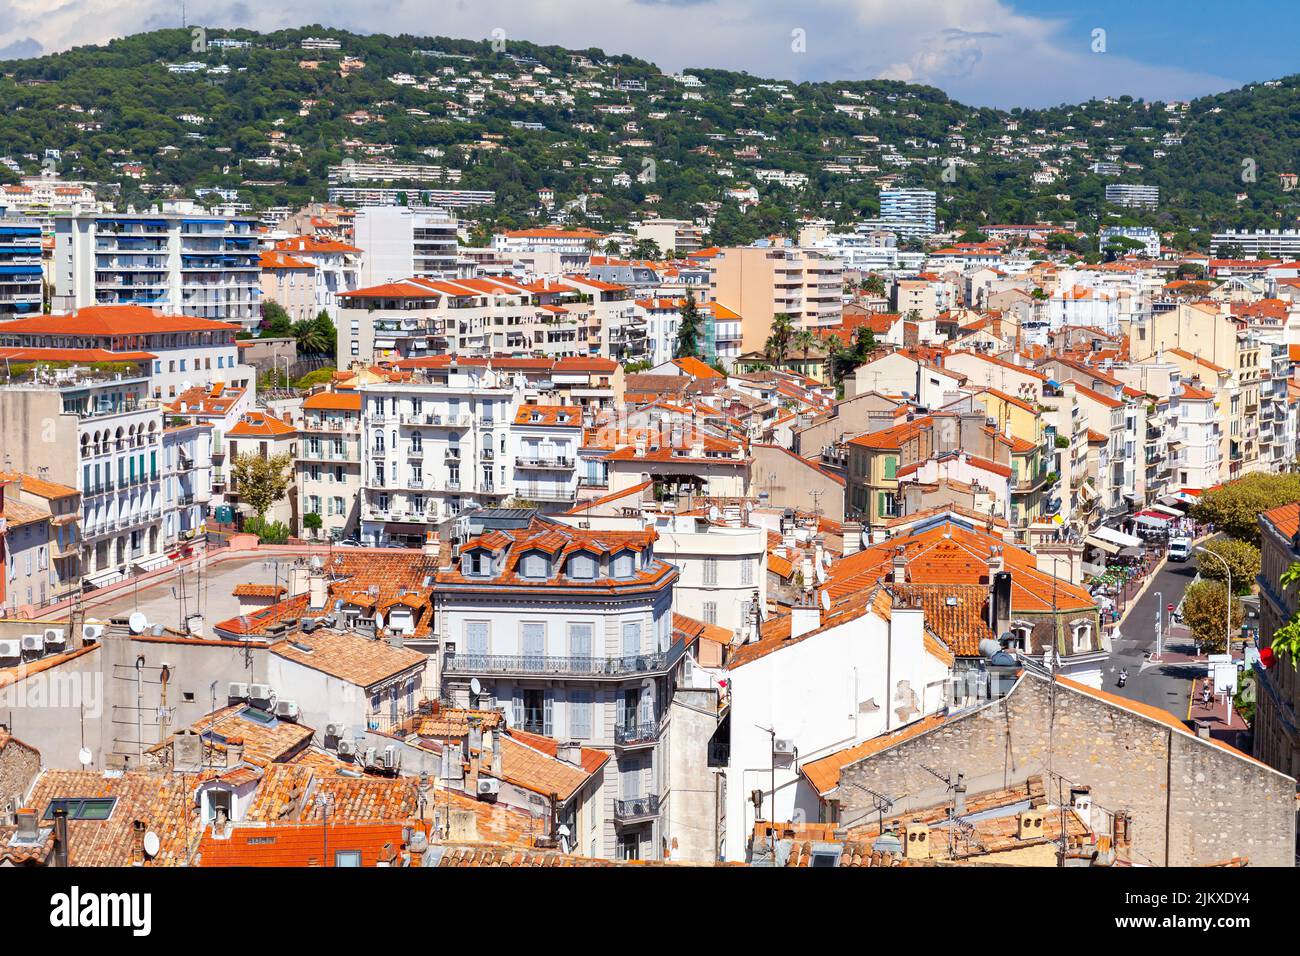 Las casas residenciales con techos de tejas rojas están bajo cielo nublado en un día soleado. Vista aérea del casco antiguo de Cannes, Francia Foto de stock